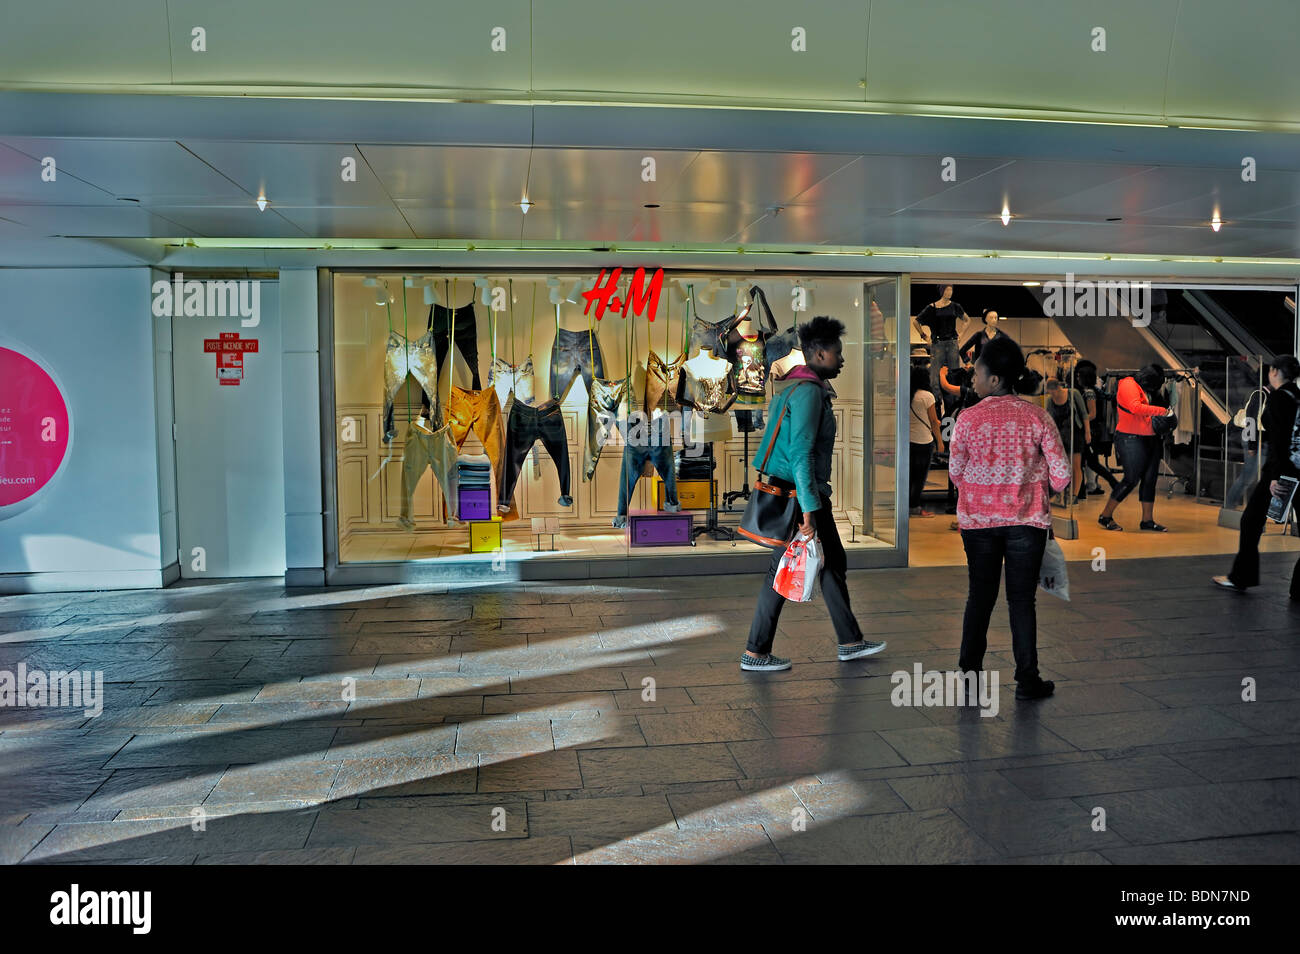 Paris, France, Street Scene, Pedestrians at Les Halles, "Le Forum des  Halles" Shopping Center, mall "H & M" "Clothing Store" fast fashion, paris  store Stock Photo - Alamy